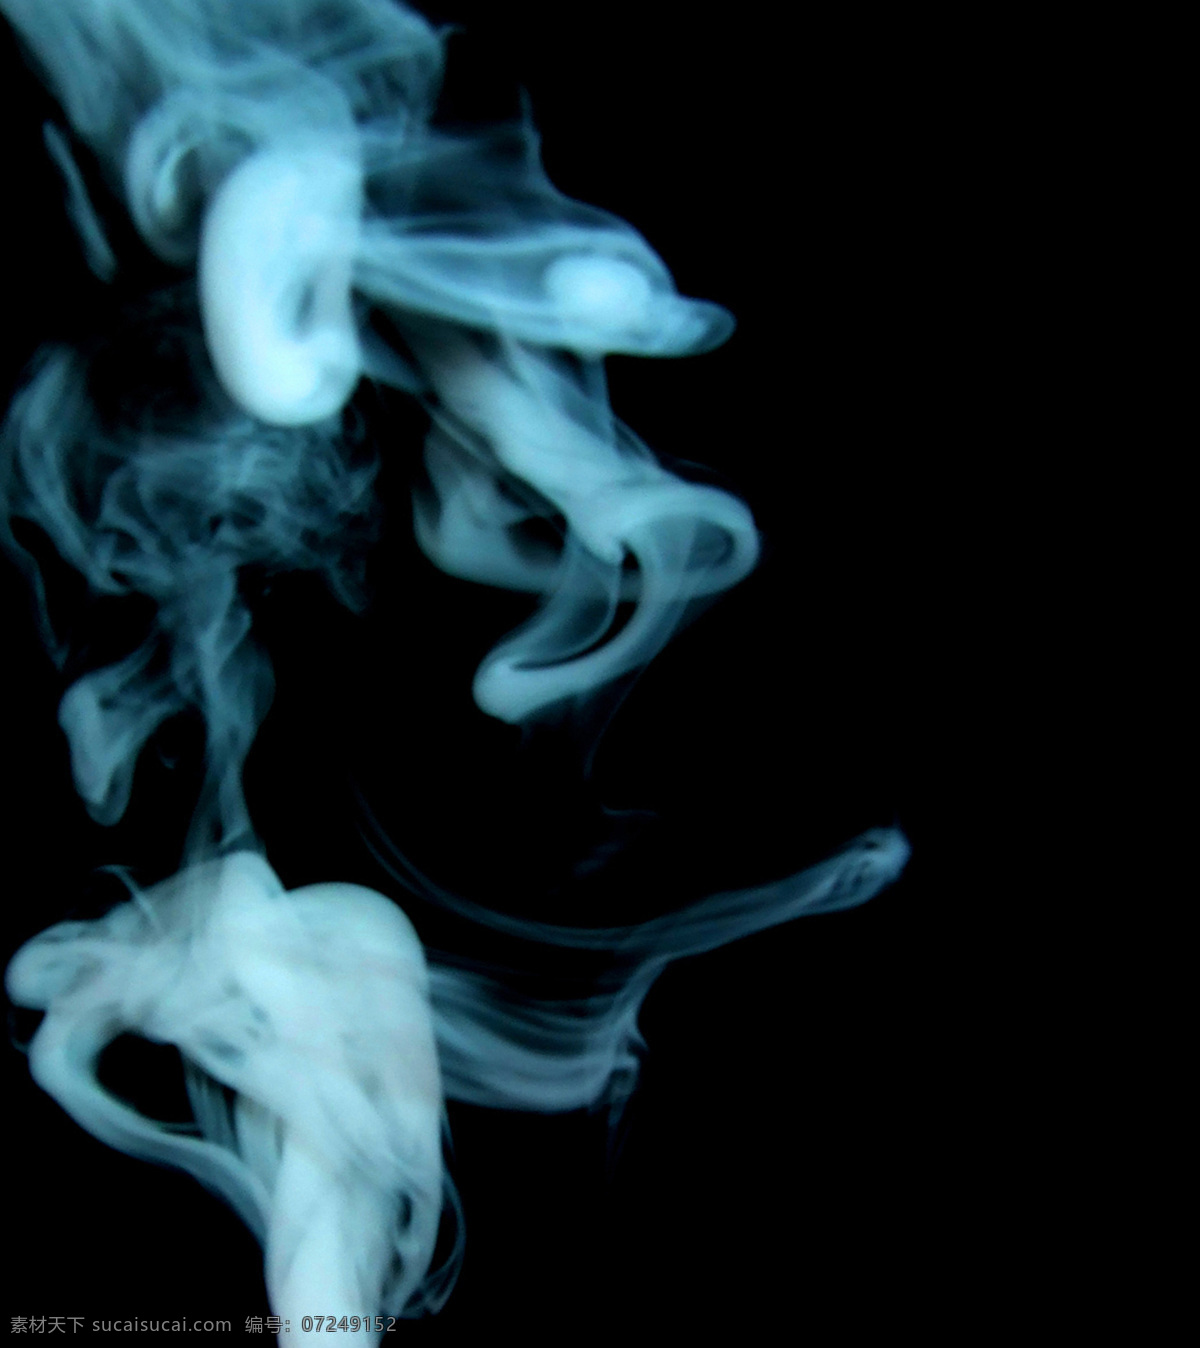 烟雾 魔幻 魔 魔法 魔术 烟 烟草 烟花鞭炮 烟花素材 烟火 烟雾的魔幻 魔兽墨迹 文化艺术